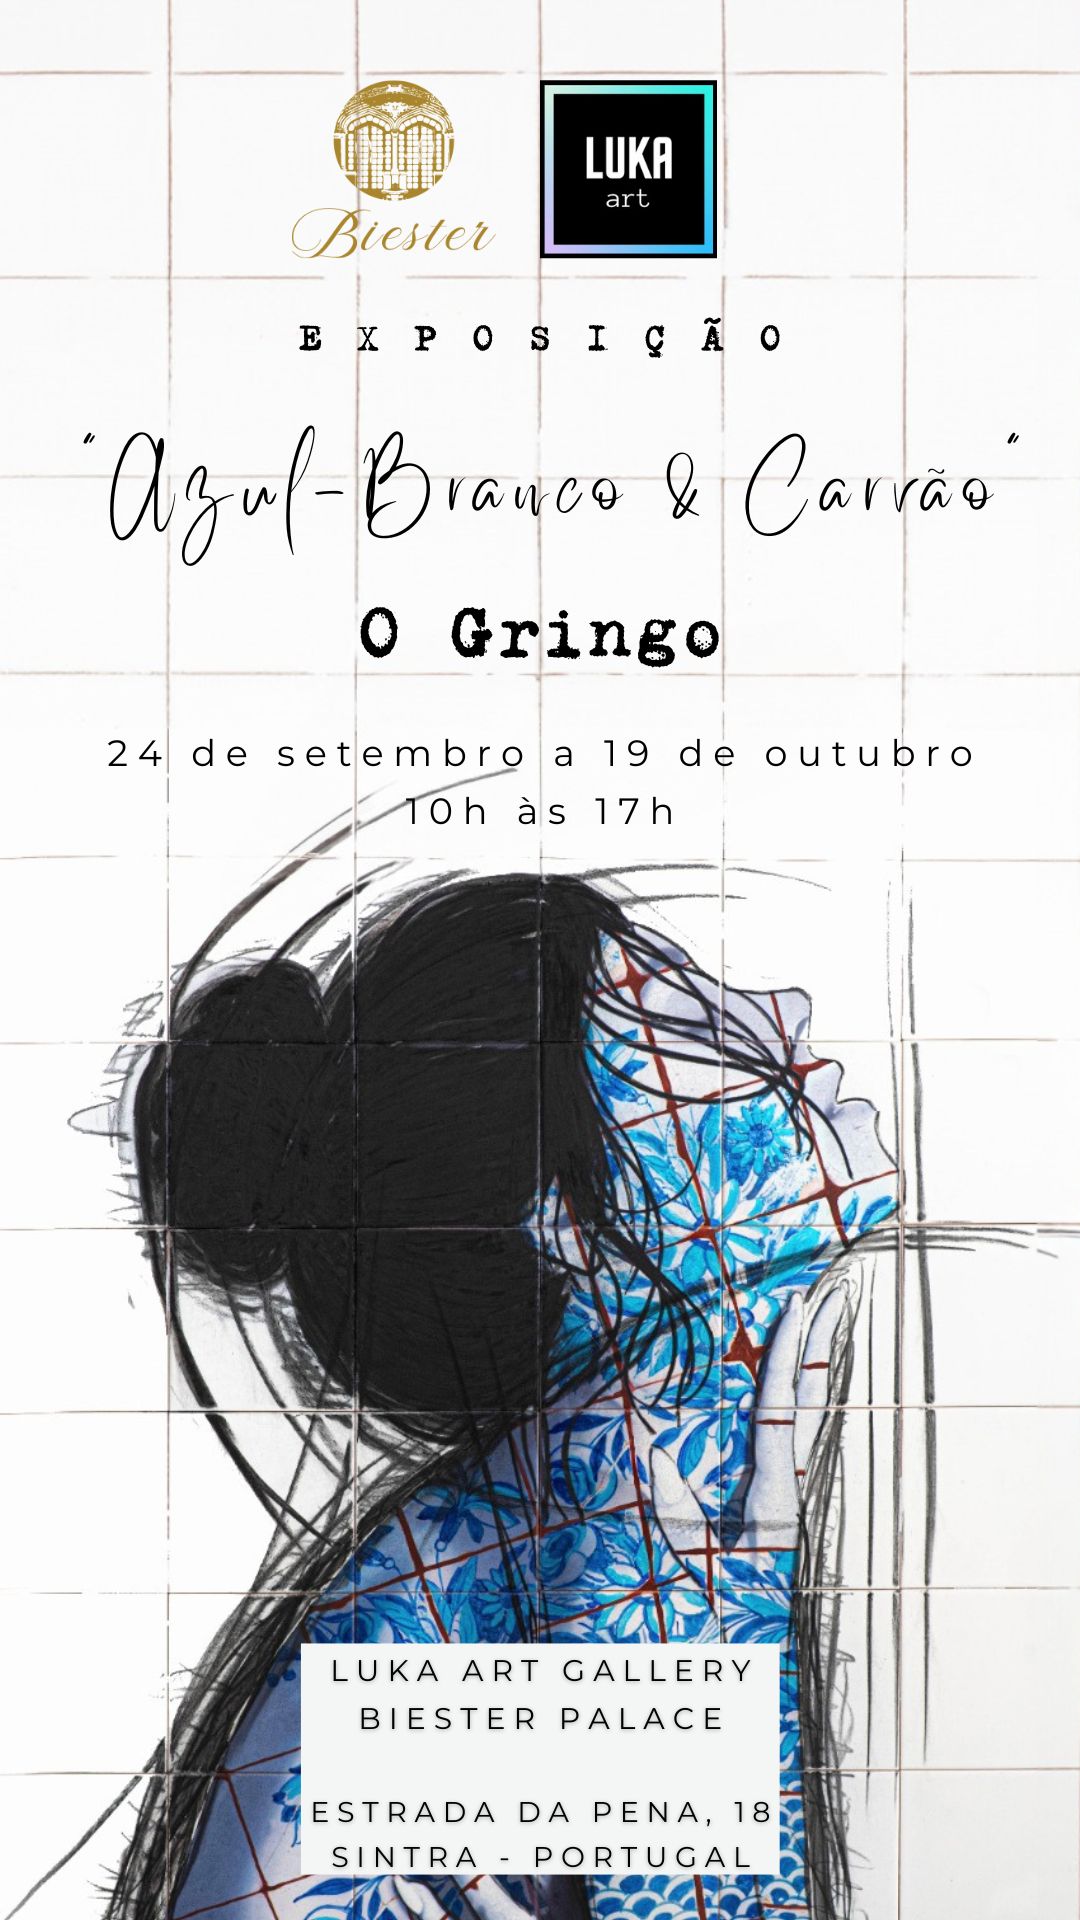 Exposição "Azul - Branco e Carvão" do artista O Gringo